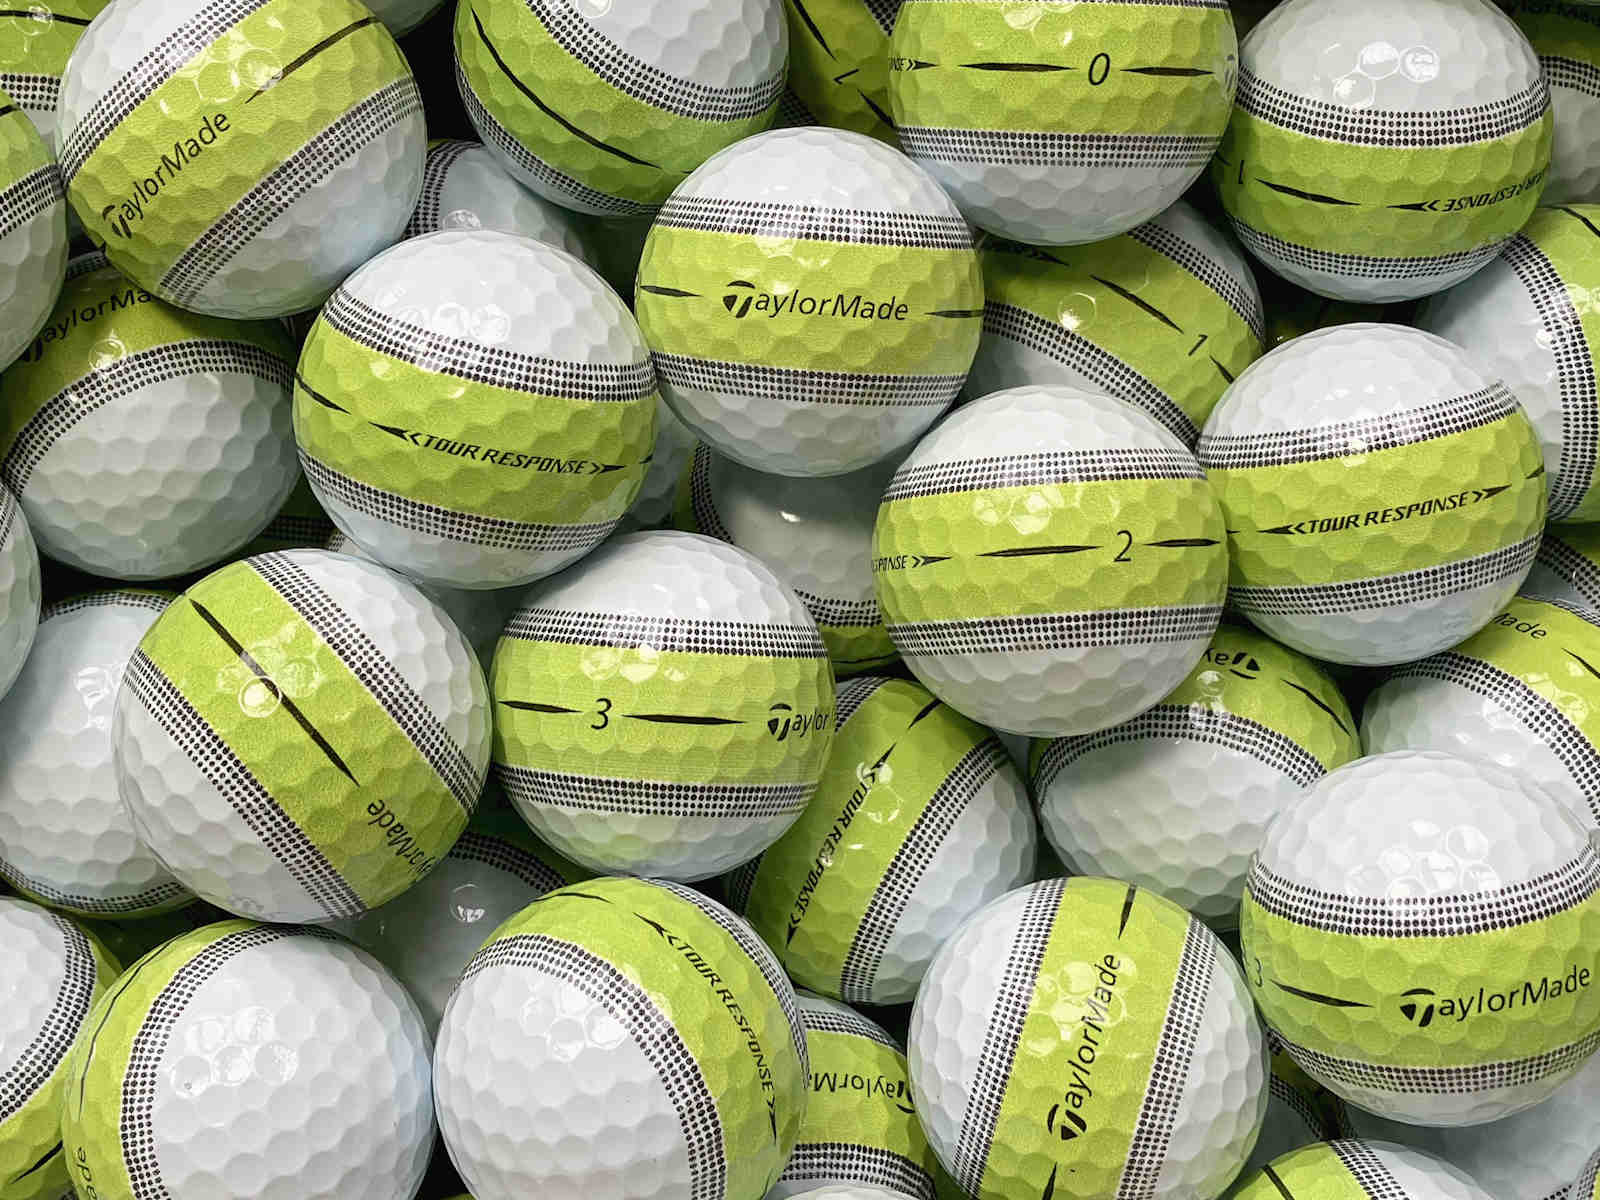 TaylorMade Tour Response Stripe Lemon Lakeballs - gebrauchte Tour Response Stripe Lemon Golfbälle AAAA-Qualität